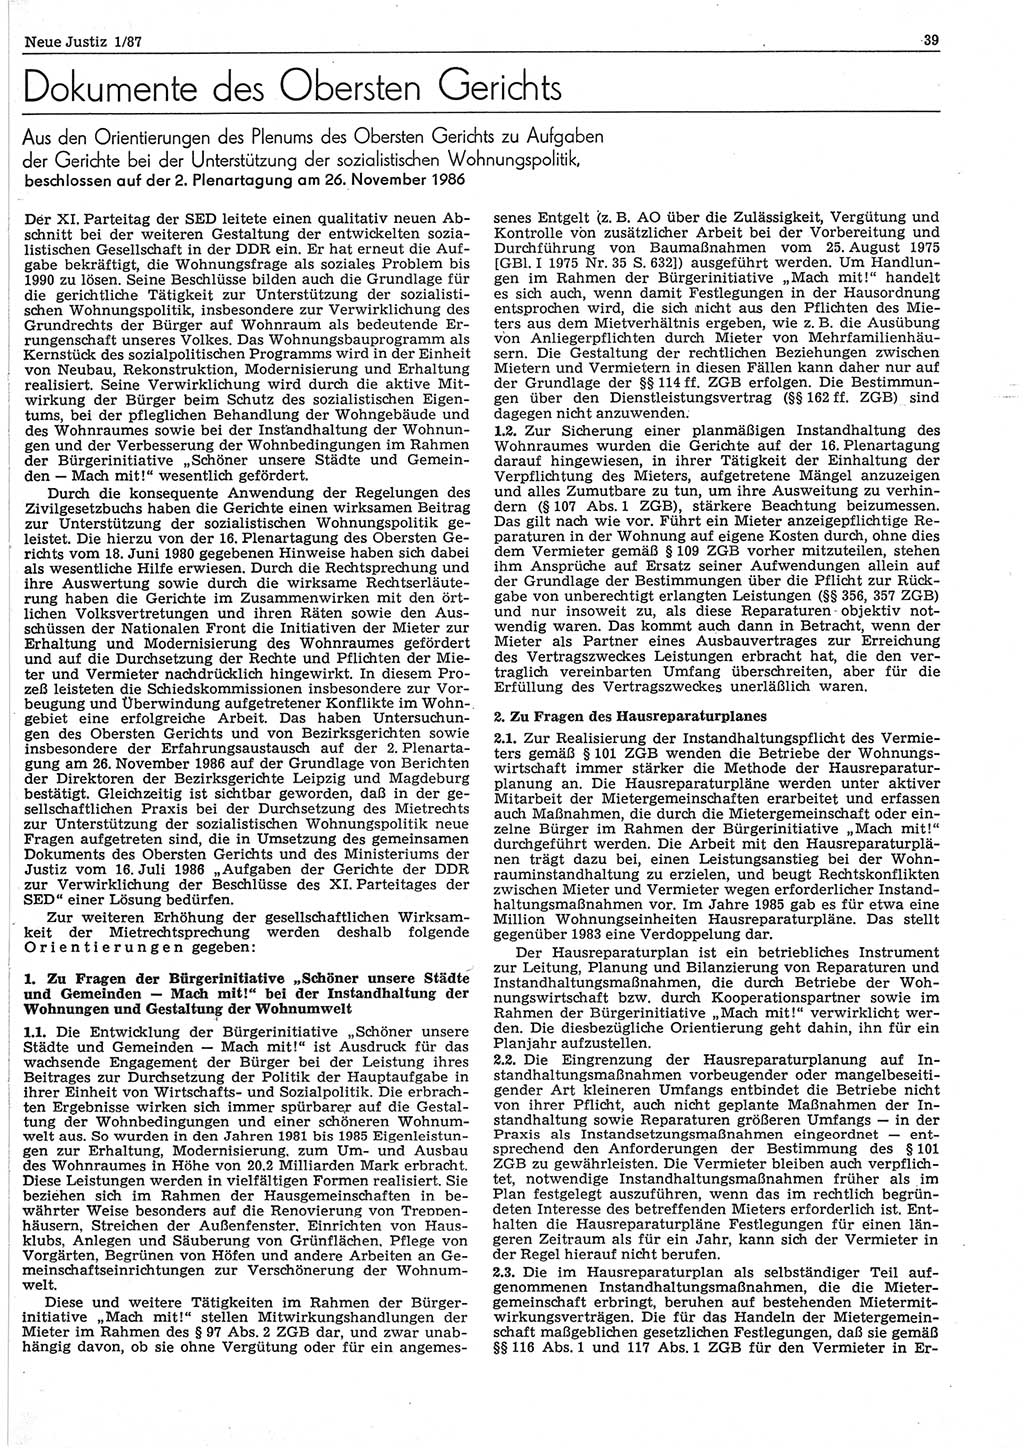 Neue Justiz (NJ), Zeitschrift für sozialistisches Recht und Gesetzlichkeit [Deutsche Demokratische Republik (DDR)], 41. Jahrgang 1987, Seite 39 (NJ DDR 1987, S. 39)